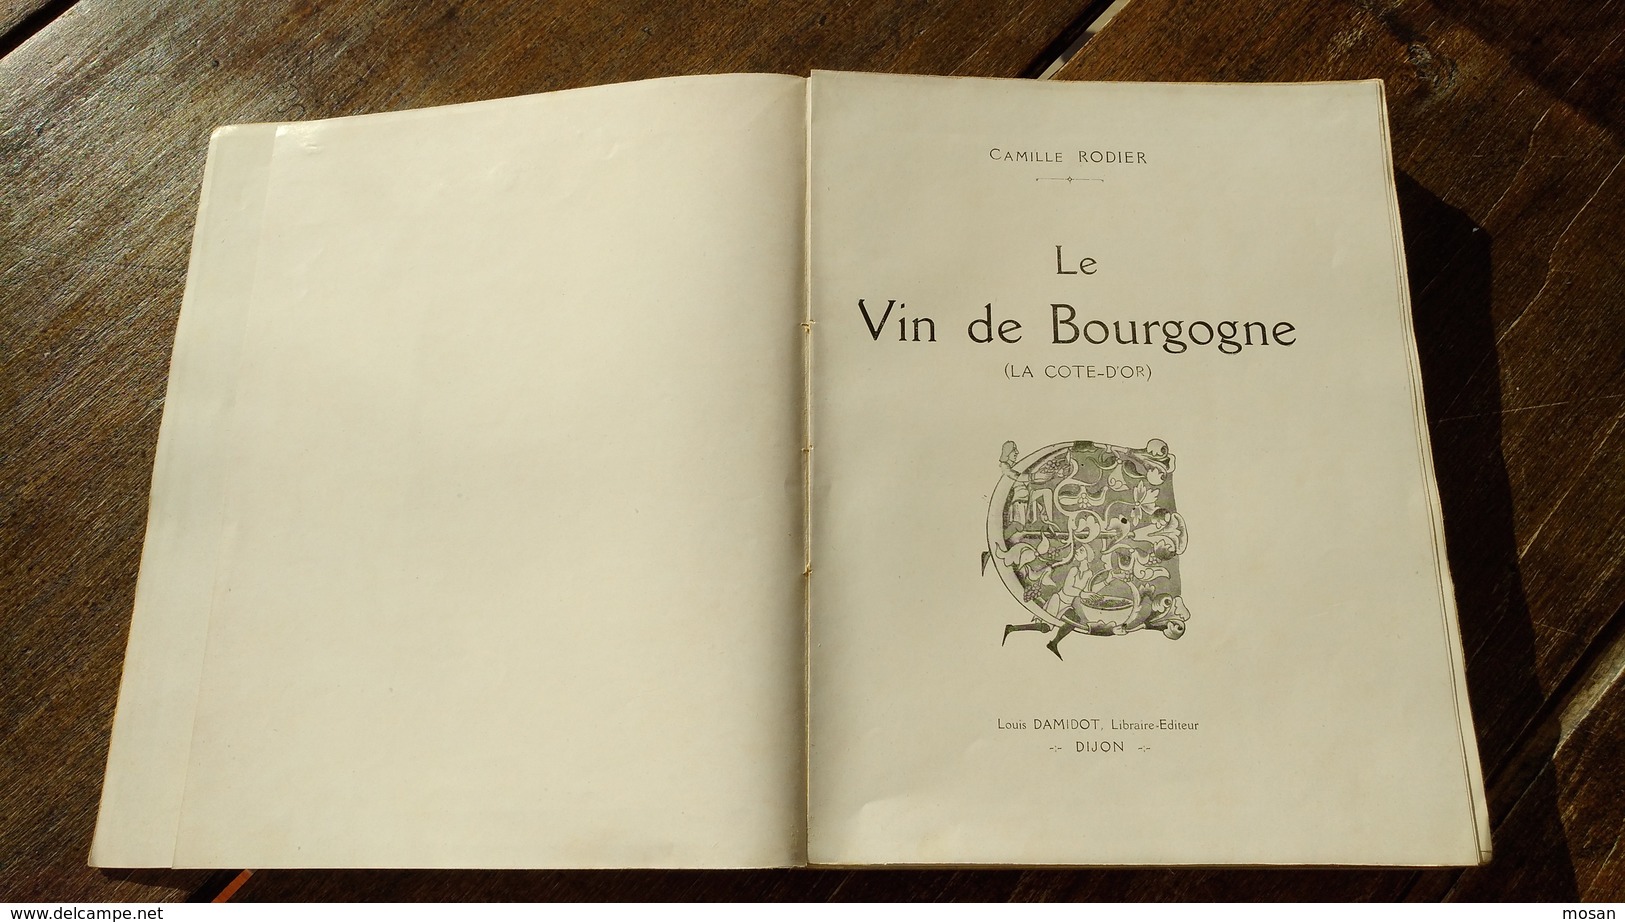 Le vin de Bourgogne. La Côte d'Or. Camille Rodier. Edition 1920. L. Damidot, Editeur. Dijon.